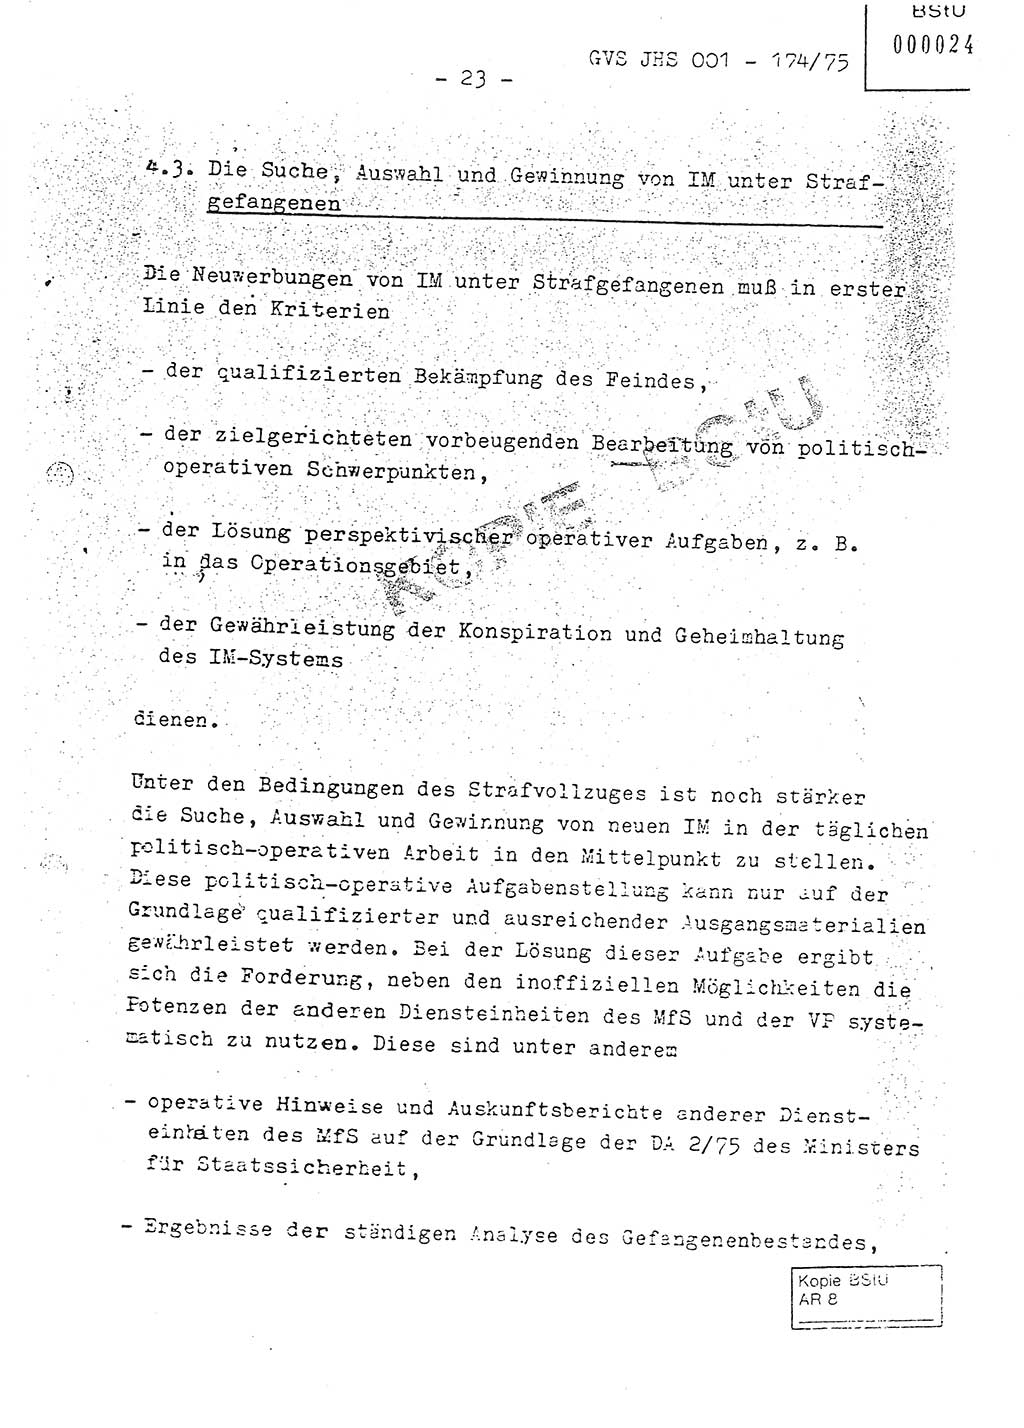 Fachschulabschlußarbeit Oberleutnant Adolf Cichon (Abt. Ⅶ), Ministerium für Staatssicherheit (MfS) [Deutsche Demokratische Republik (DDR)], Juristische Hochschule (JHS), Geheime Verschlußsache (GVS) 001-174/75, Potsdam 1976, Seite 23 (FS-Abschl.-Arb. MfS DDR JHS GVS 001-174/75 1976, S. 23)